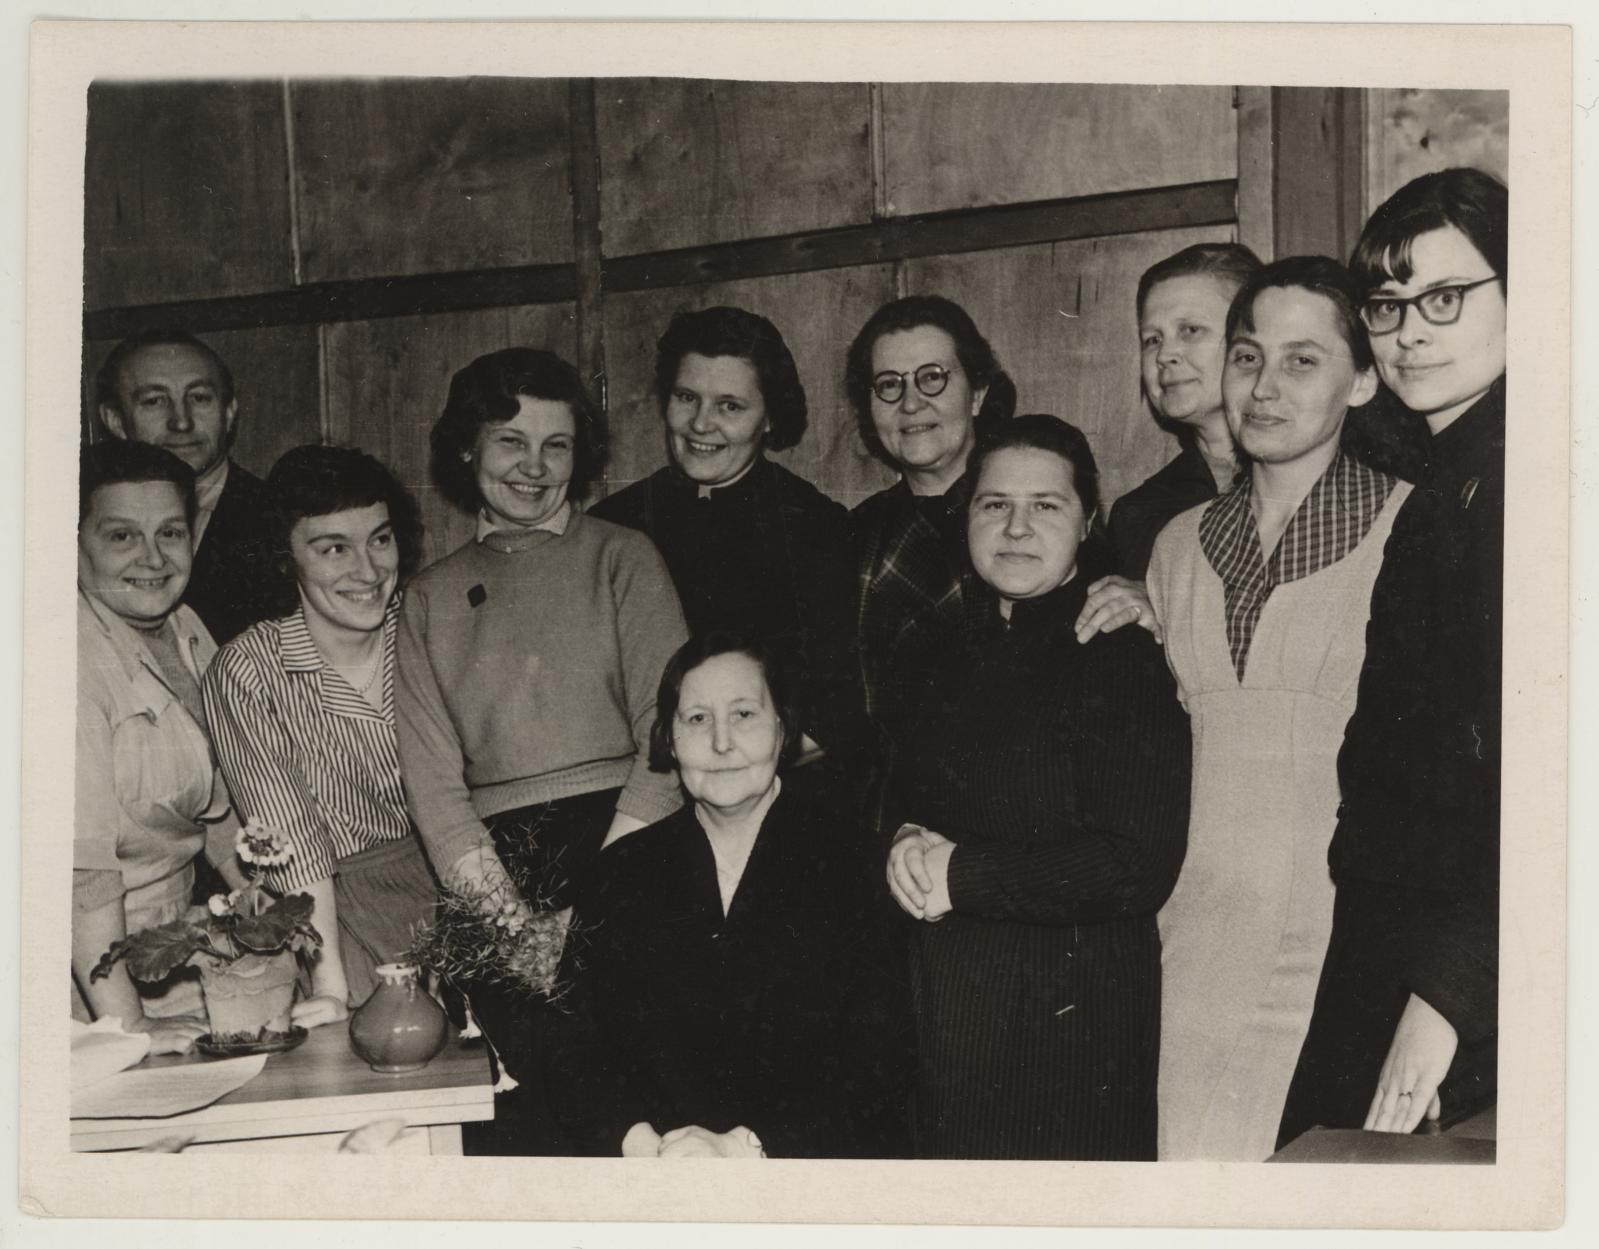 TKM-i töötajate koosviibimine 25. märtsil 1960. reatuletõrjuja Maria Krulli töölt lahkumise puhul